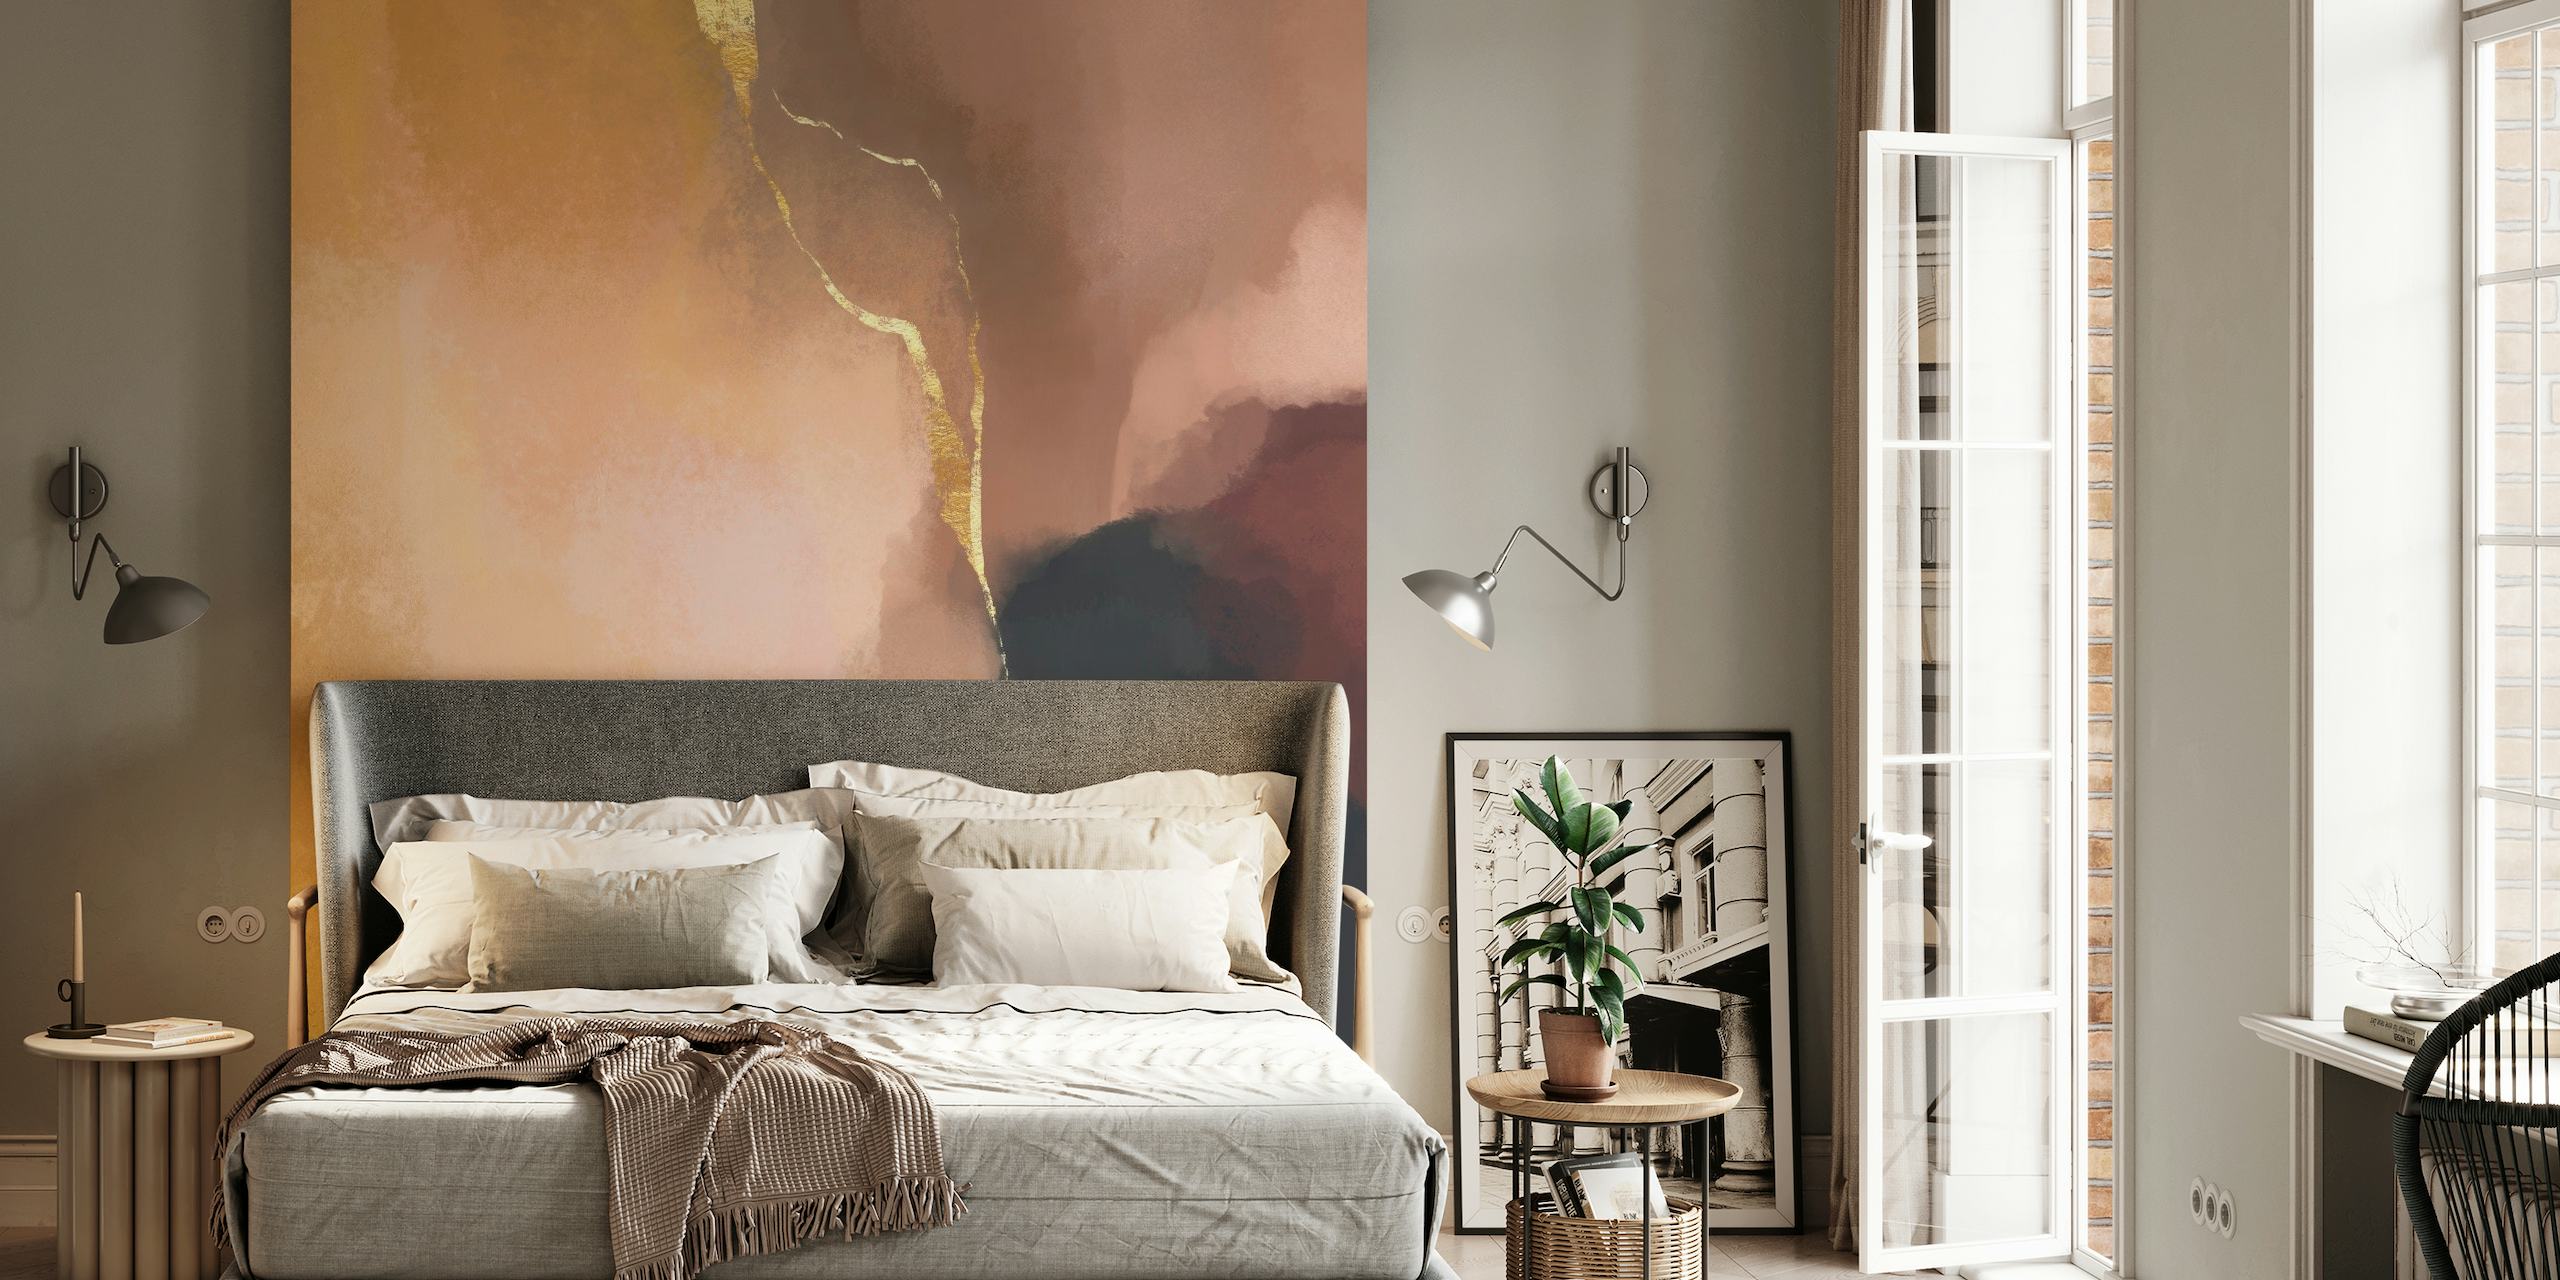 Abstrakt 'Stay Calm' vægmaleri i rav, guld og blush toner med kul accenter